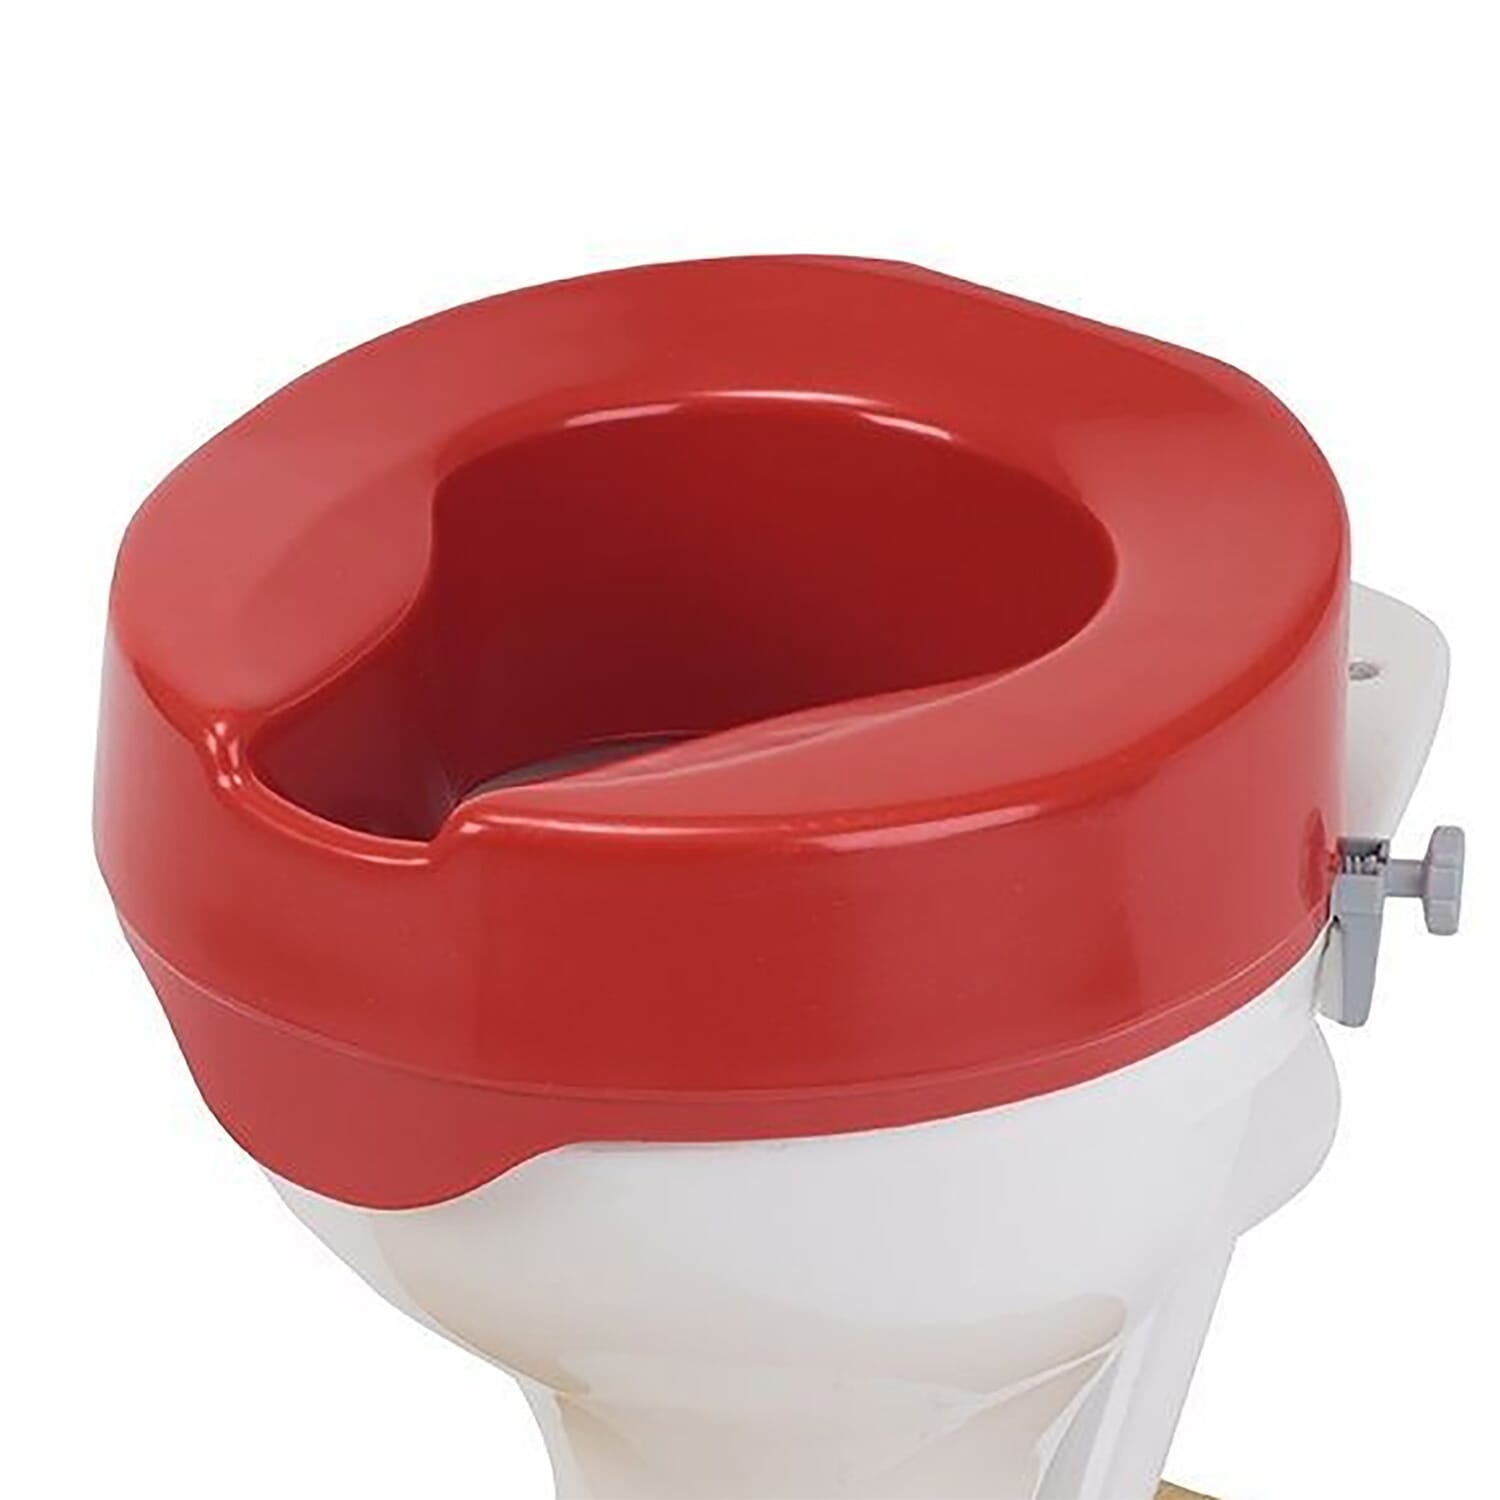 View Rehausseur de toilettes rouge 10 cm information